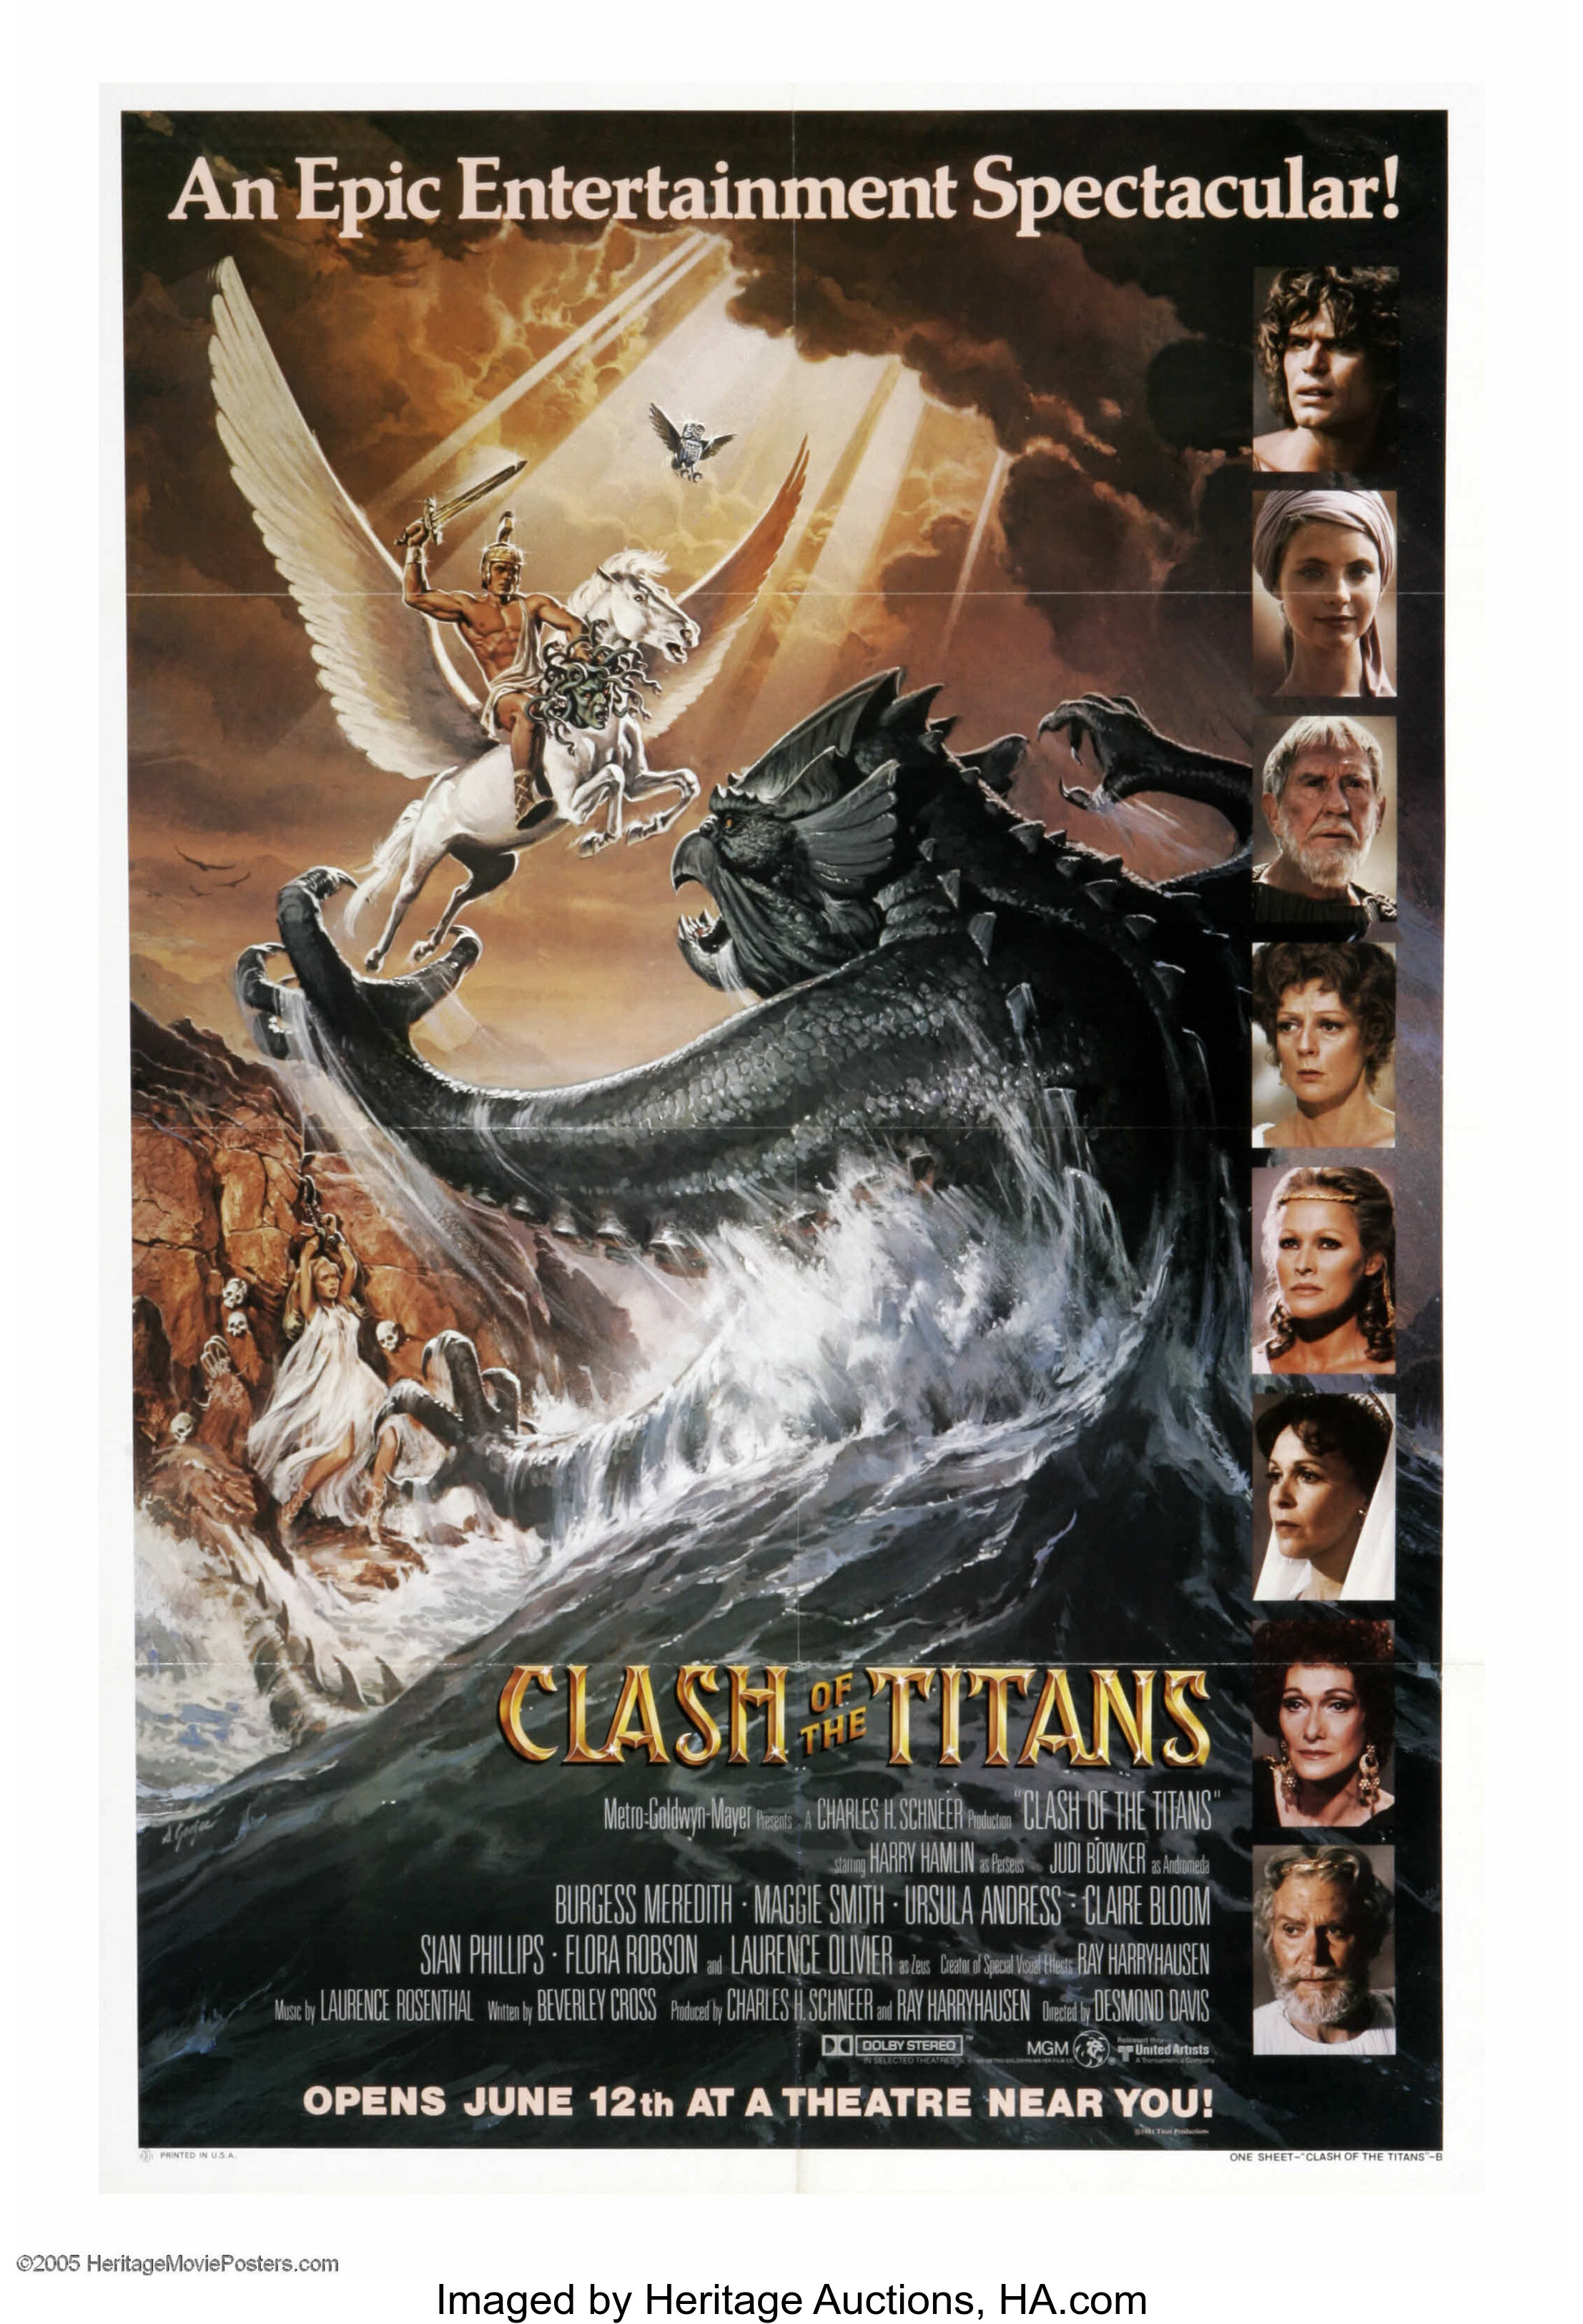 Clash of the Titans (1981) - Plot - IMDb